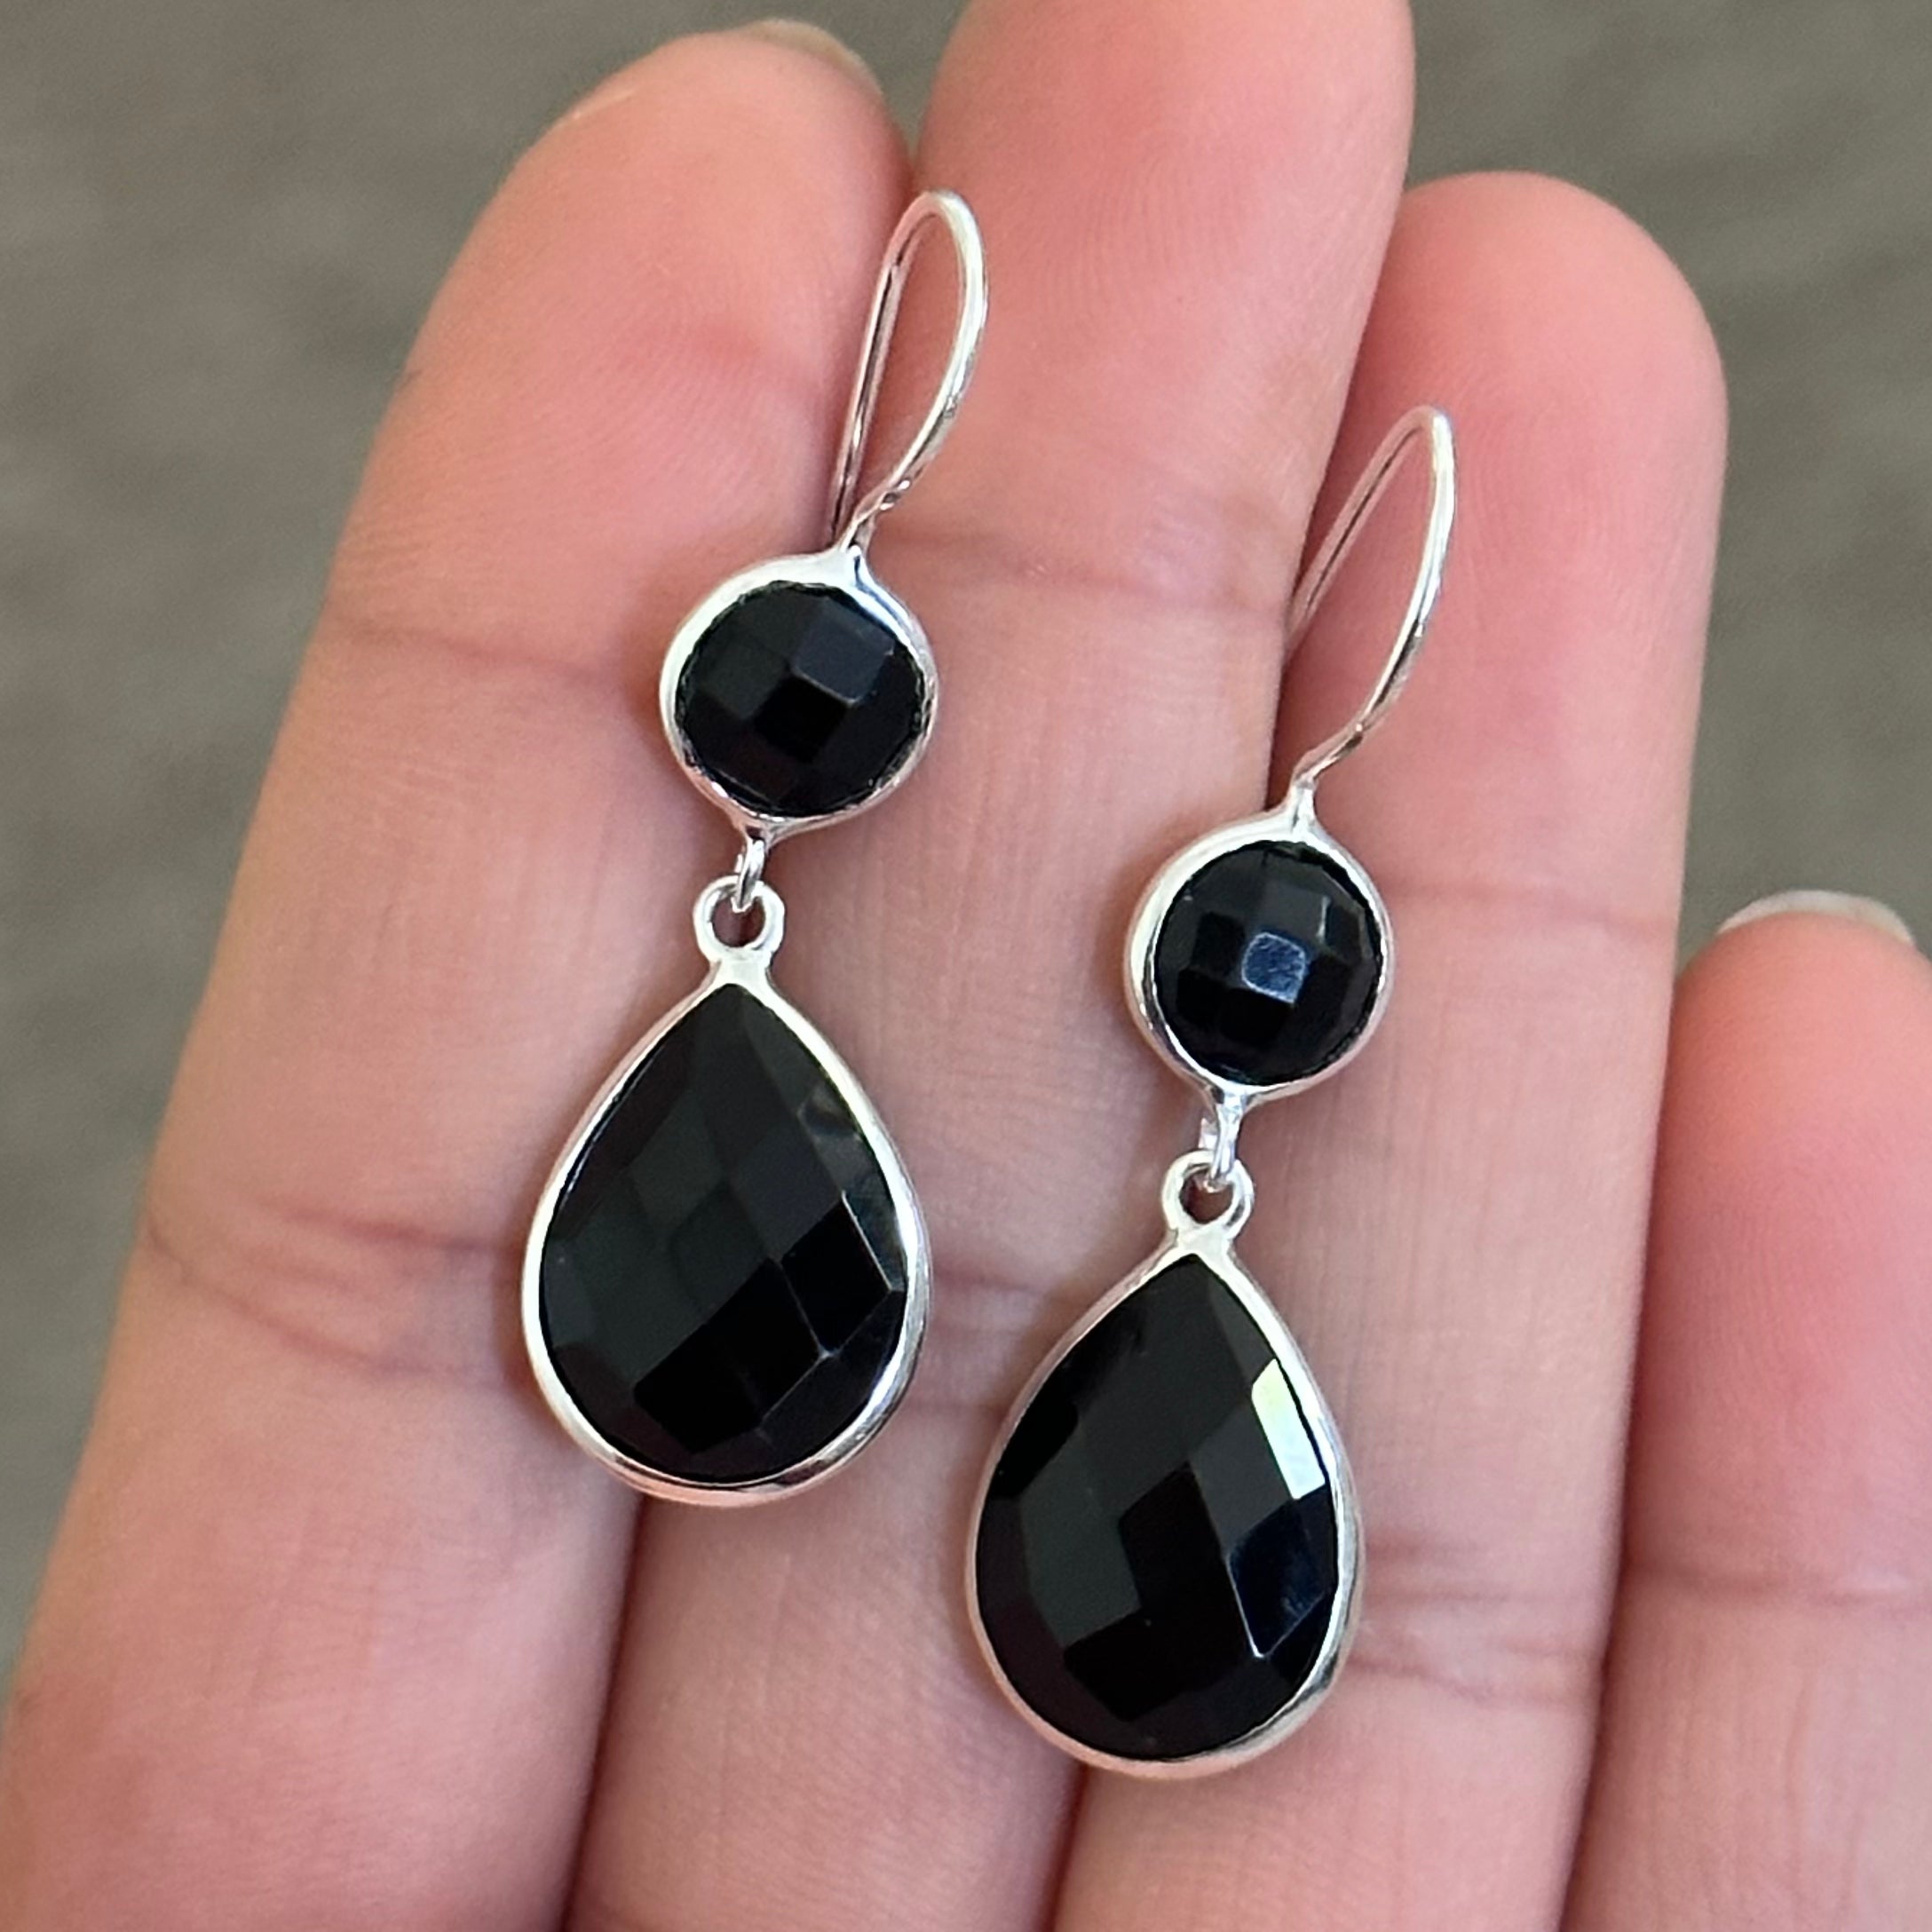 Black Onyx Gemstone Two Stone Earrings in Sterling Silver - Teardrop